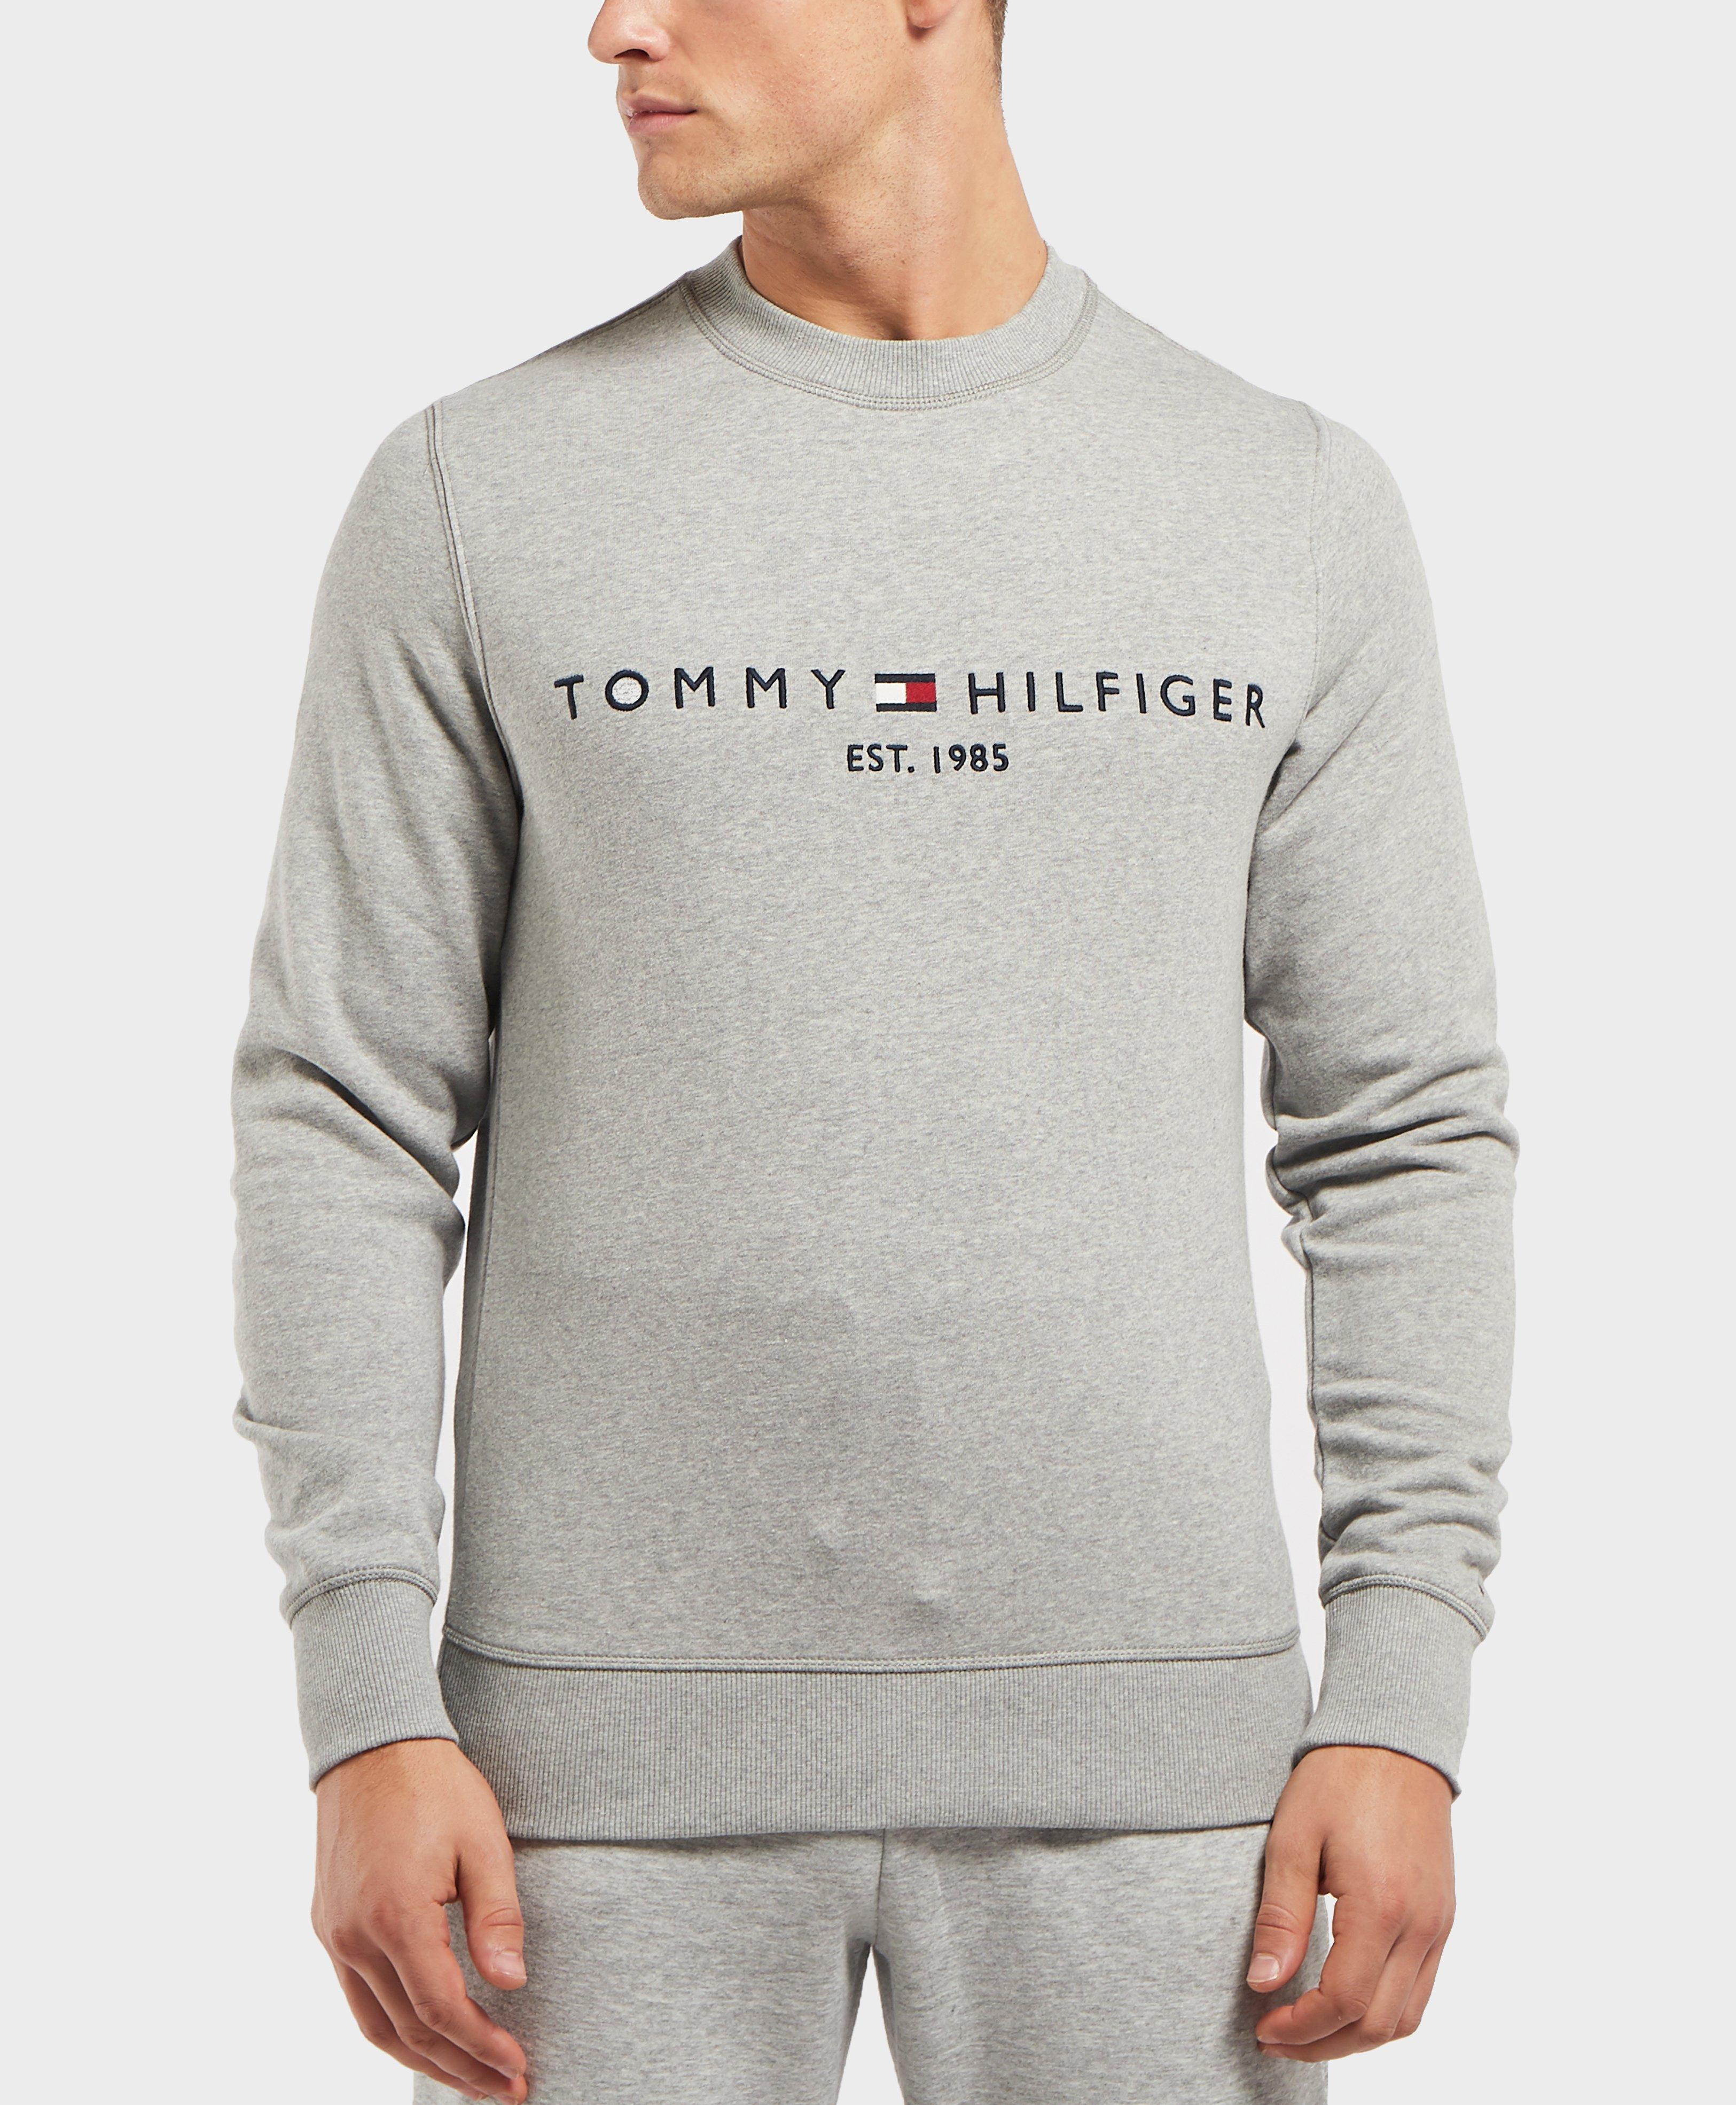 Sale > hilfiger crew neck sweatshirt > in stock